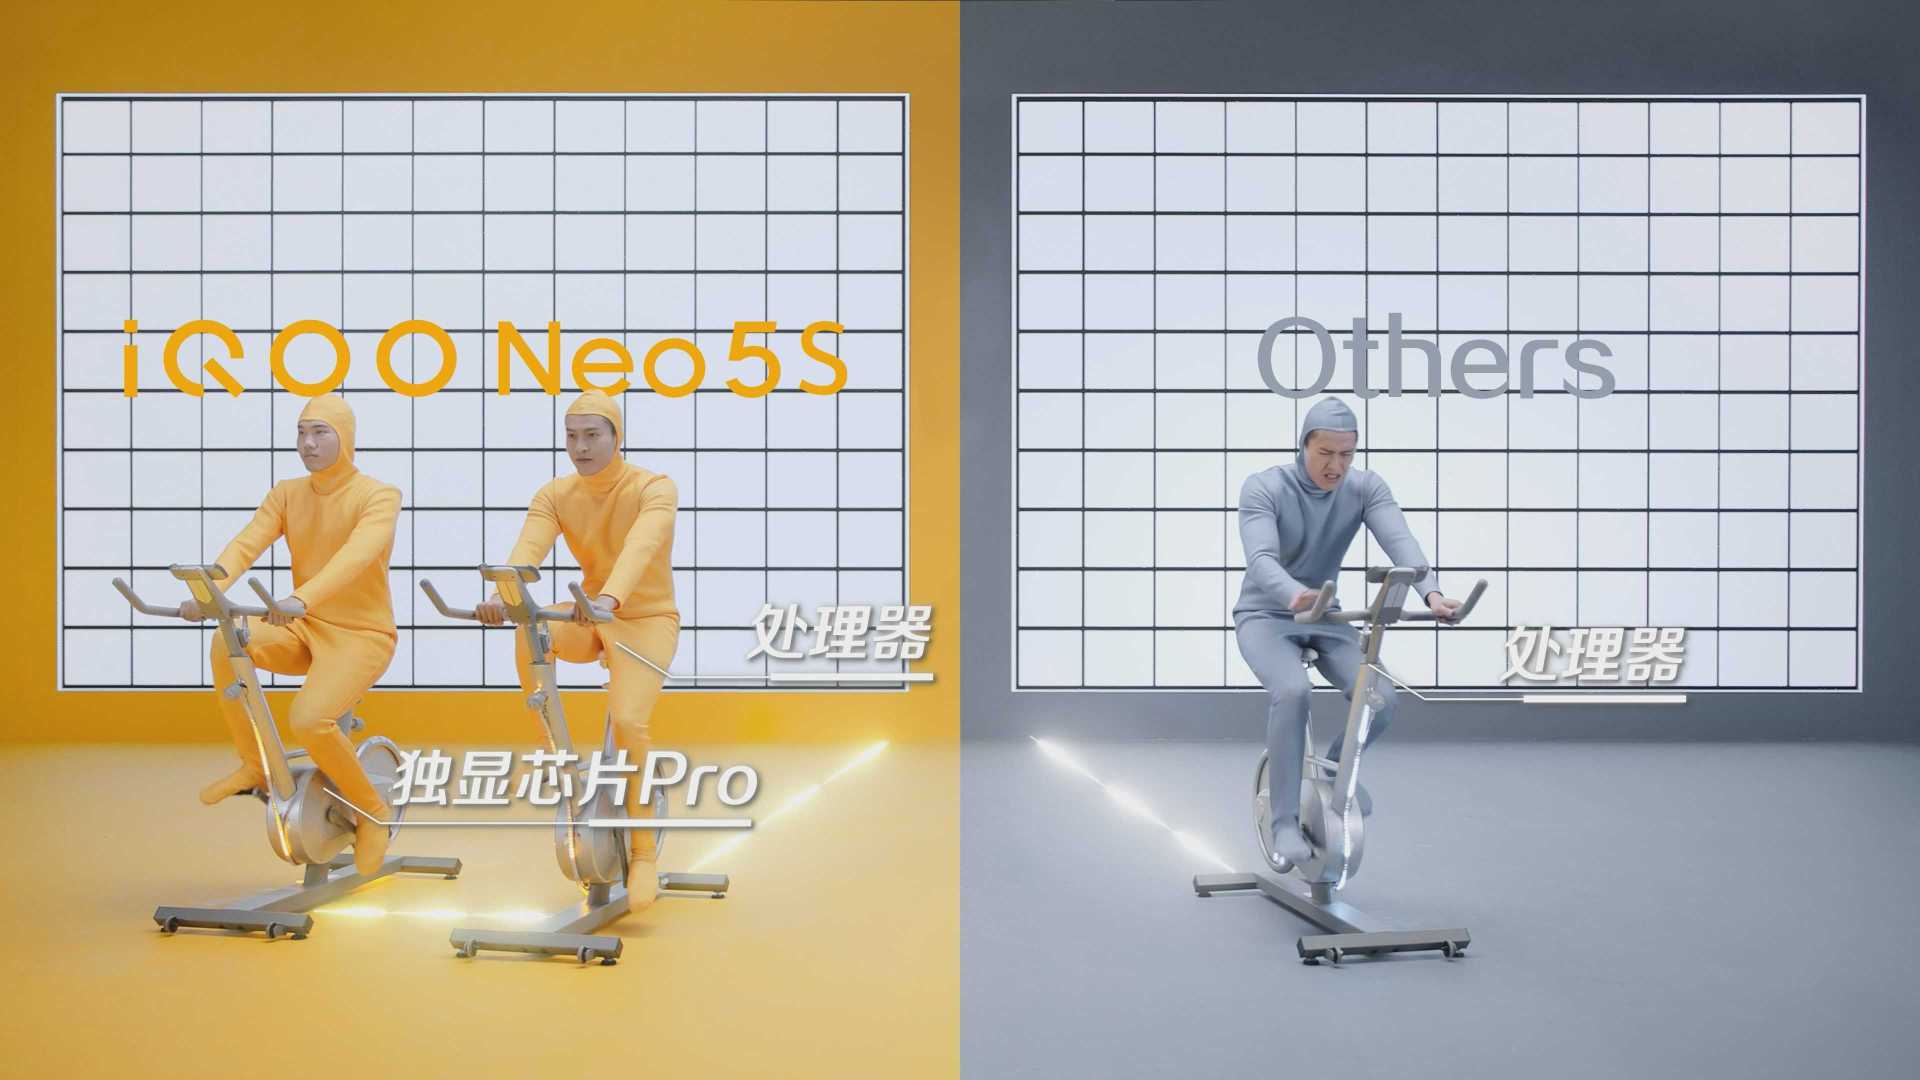 【短片】iQOO Neo5S 高导稀土散热创意短片